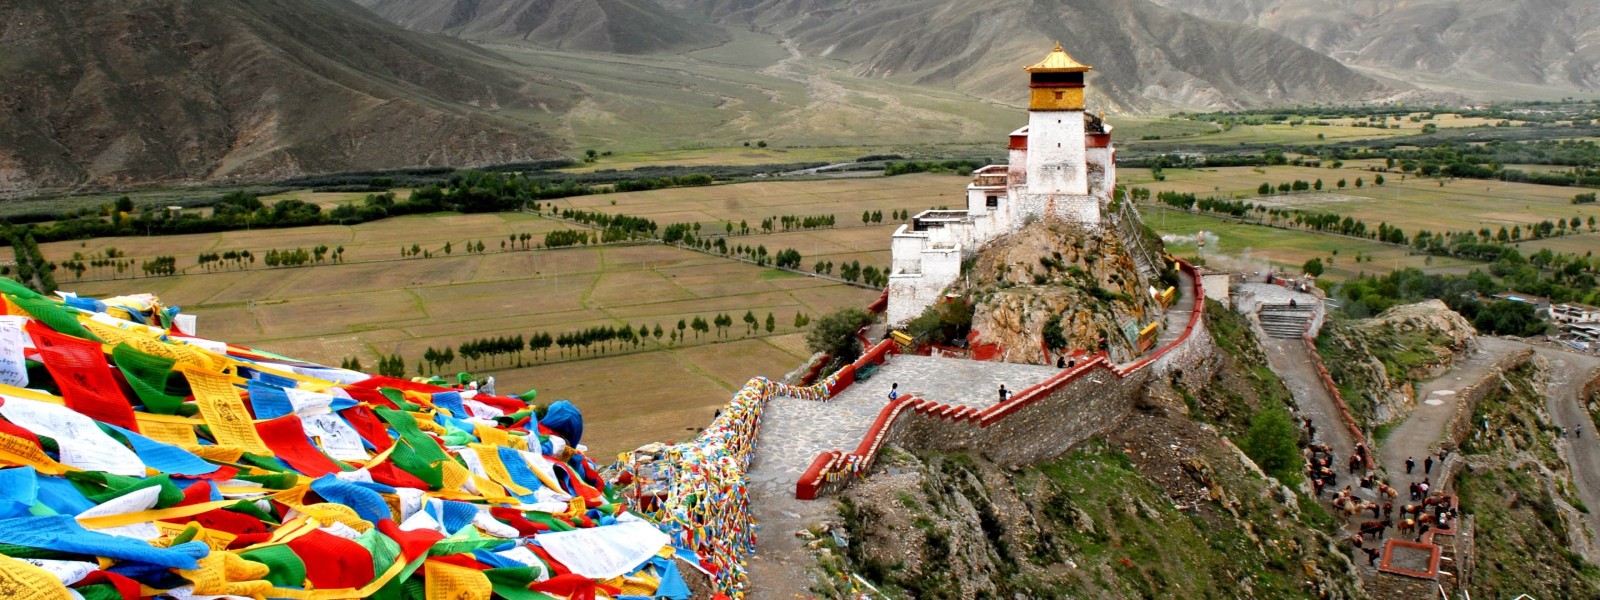 Overland Tour in Tibet